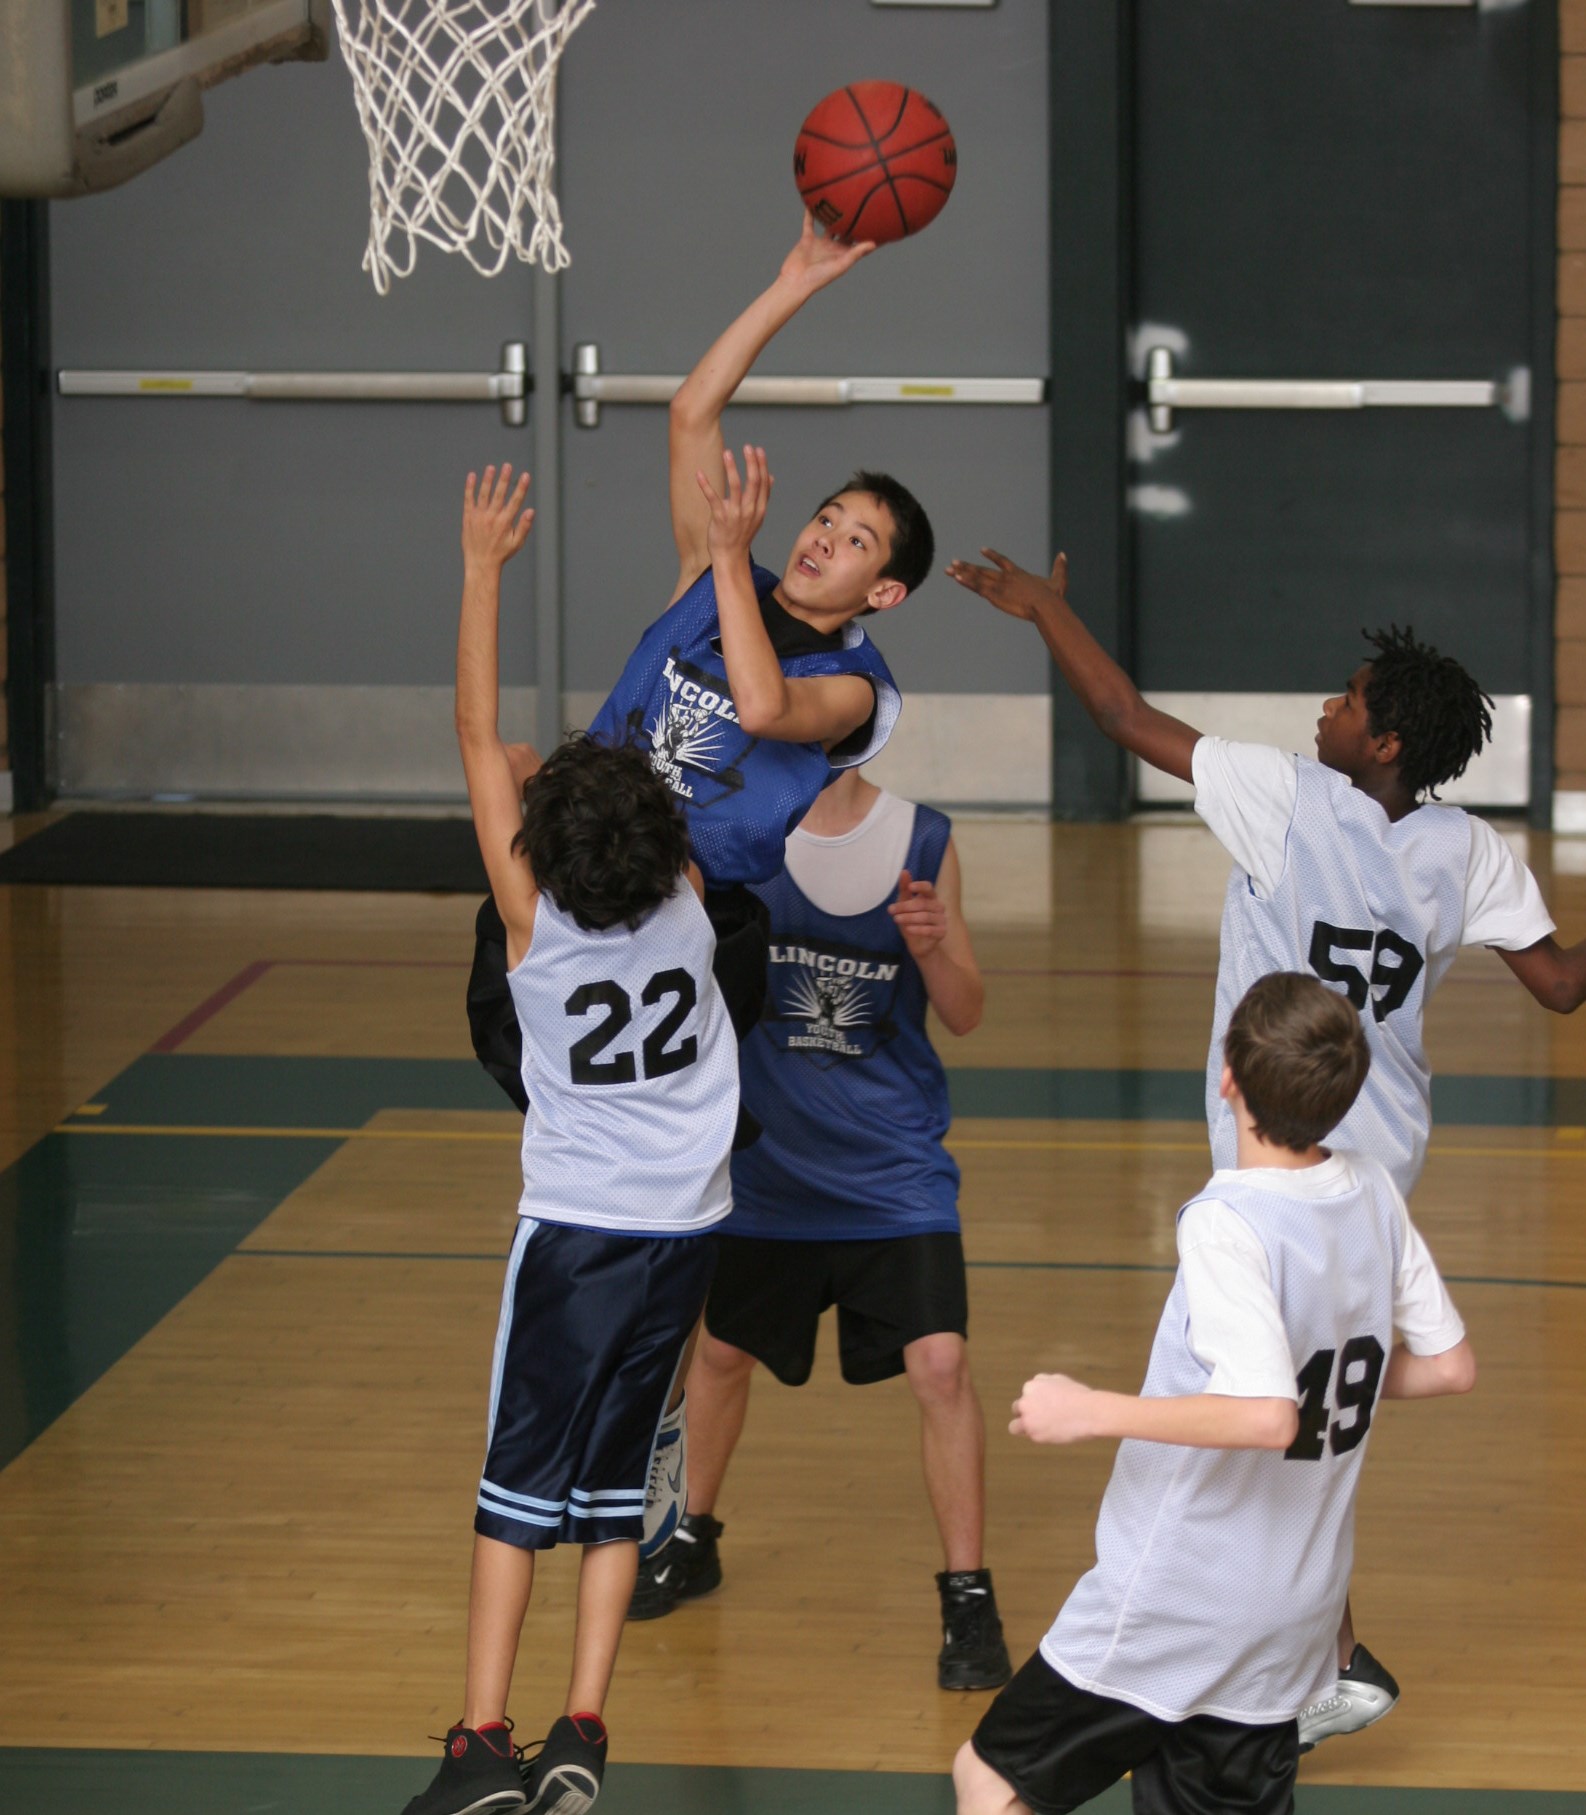 Youth Basketball Player Shooting a Layup